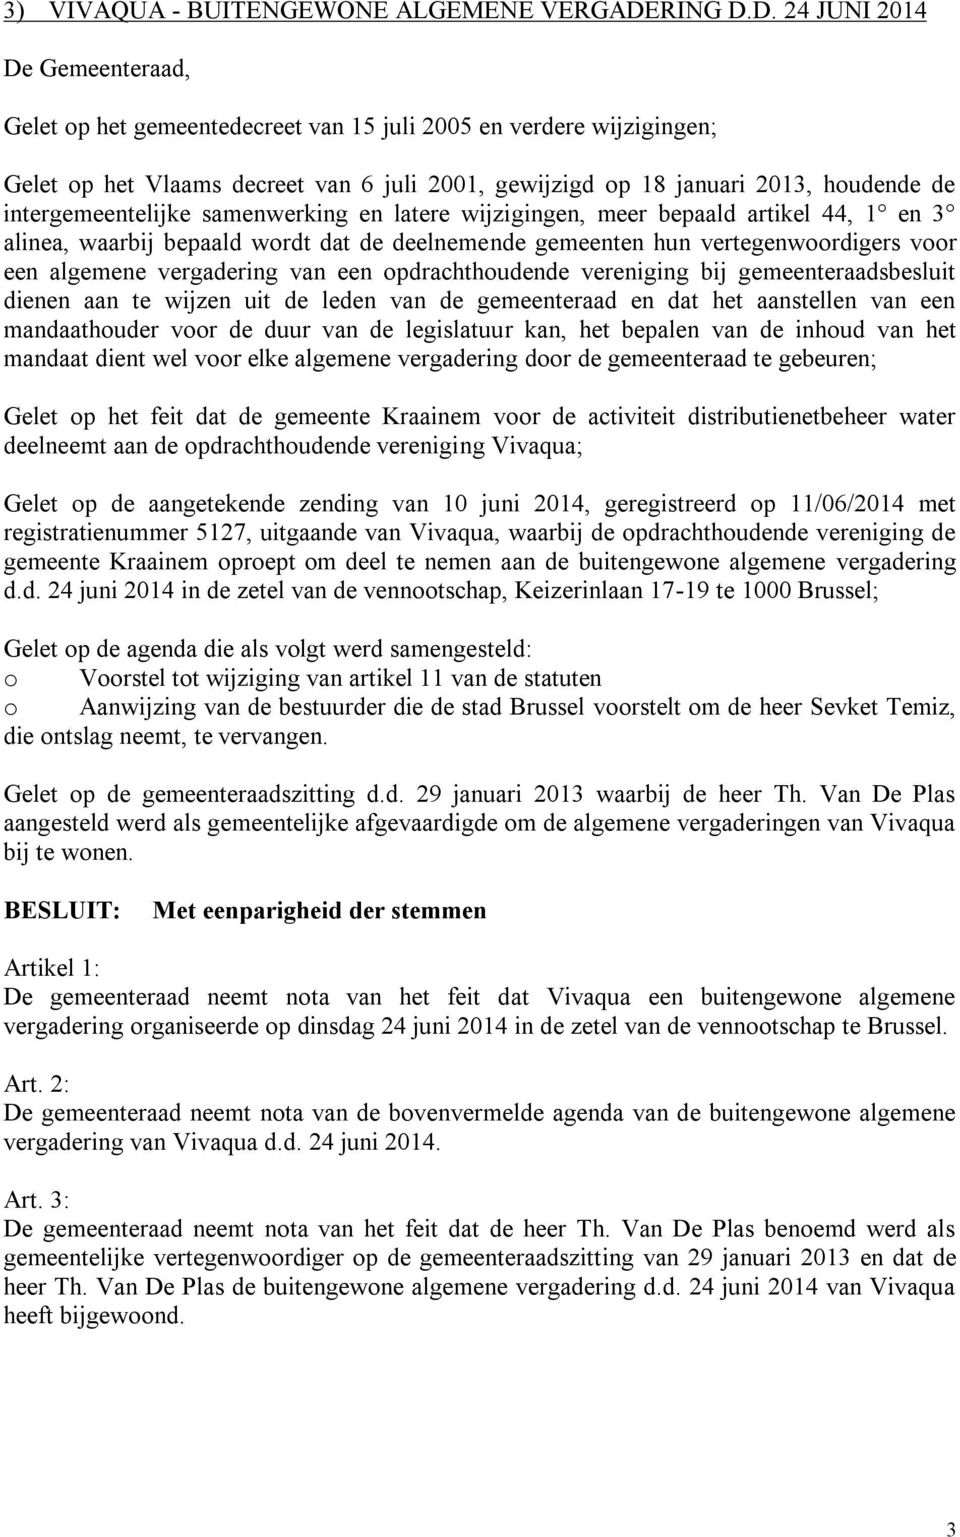 D. 24 JUNI 2014 De Gemeenteraad, Gelet op het gemeentedecreet van 15 juli 2005 en verdere wijzigingen; Gelet op het Vlaams decreet van 6 juli 2001, gewijzigd op 18 januari 2013, houdende de